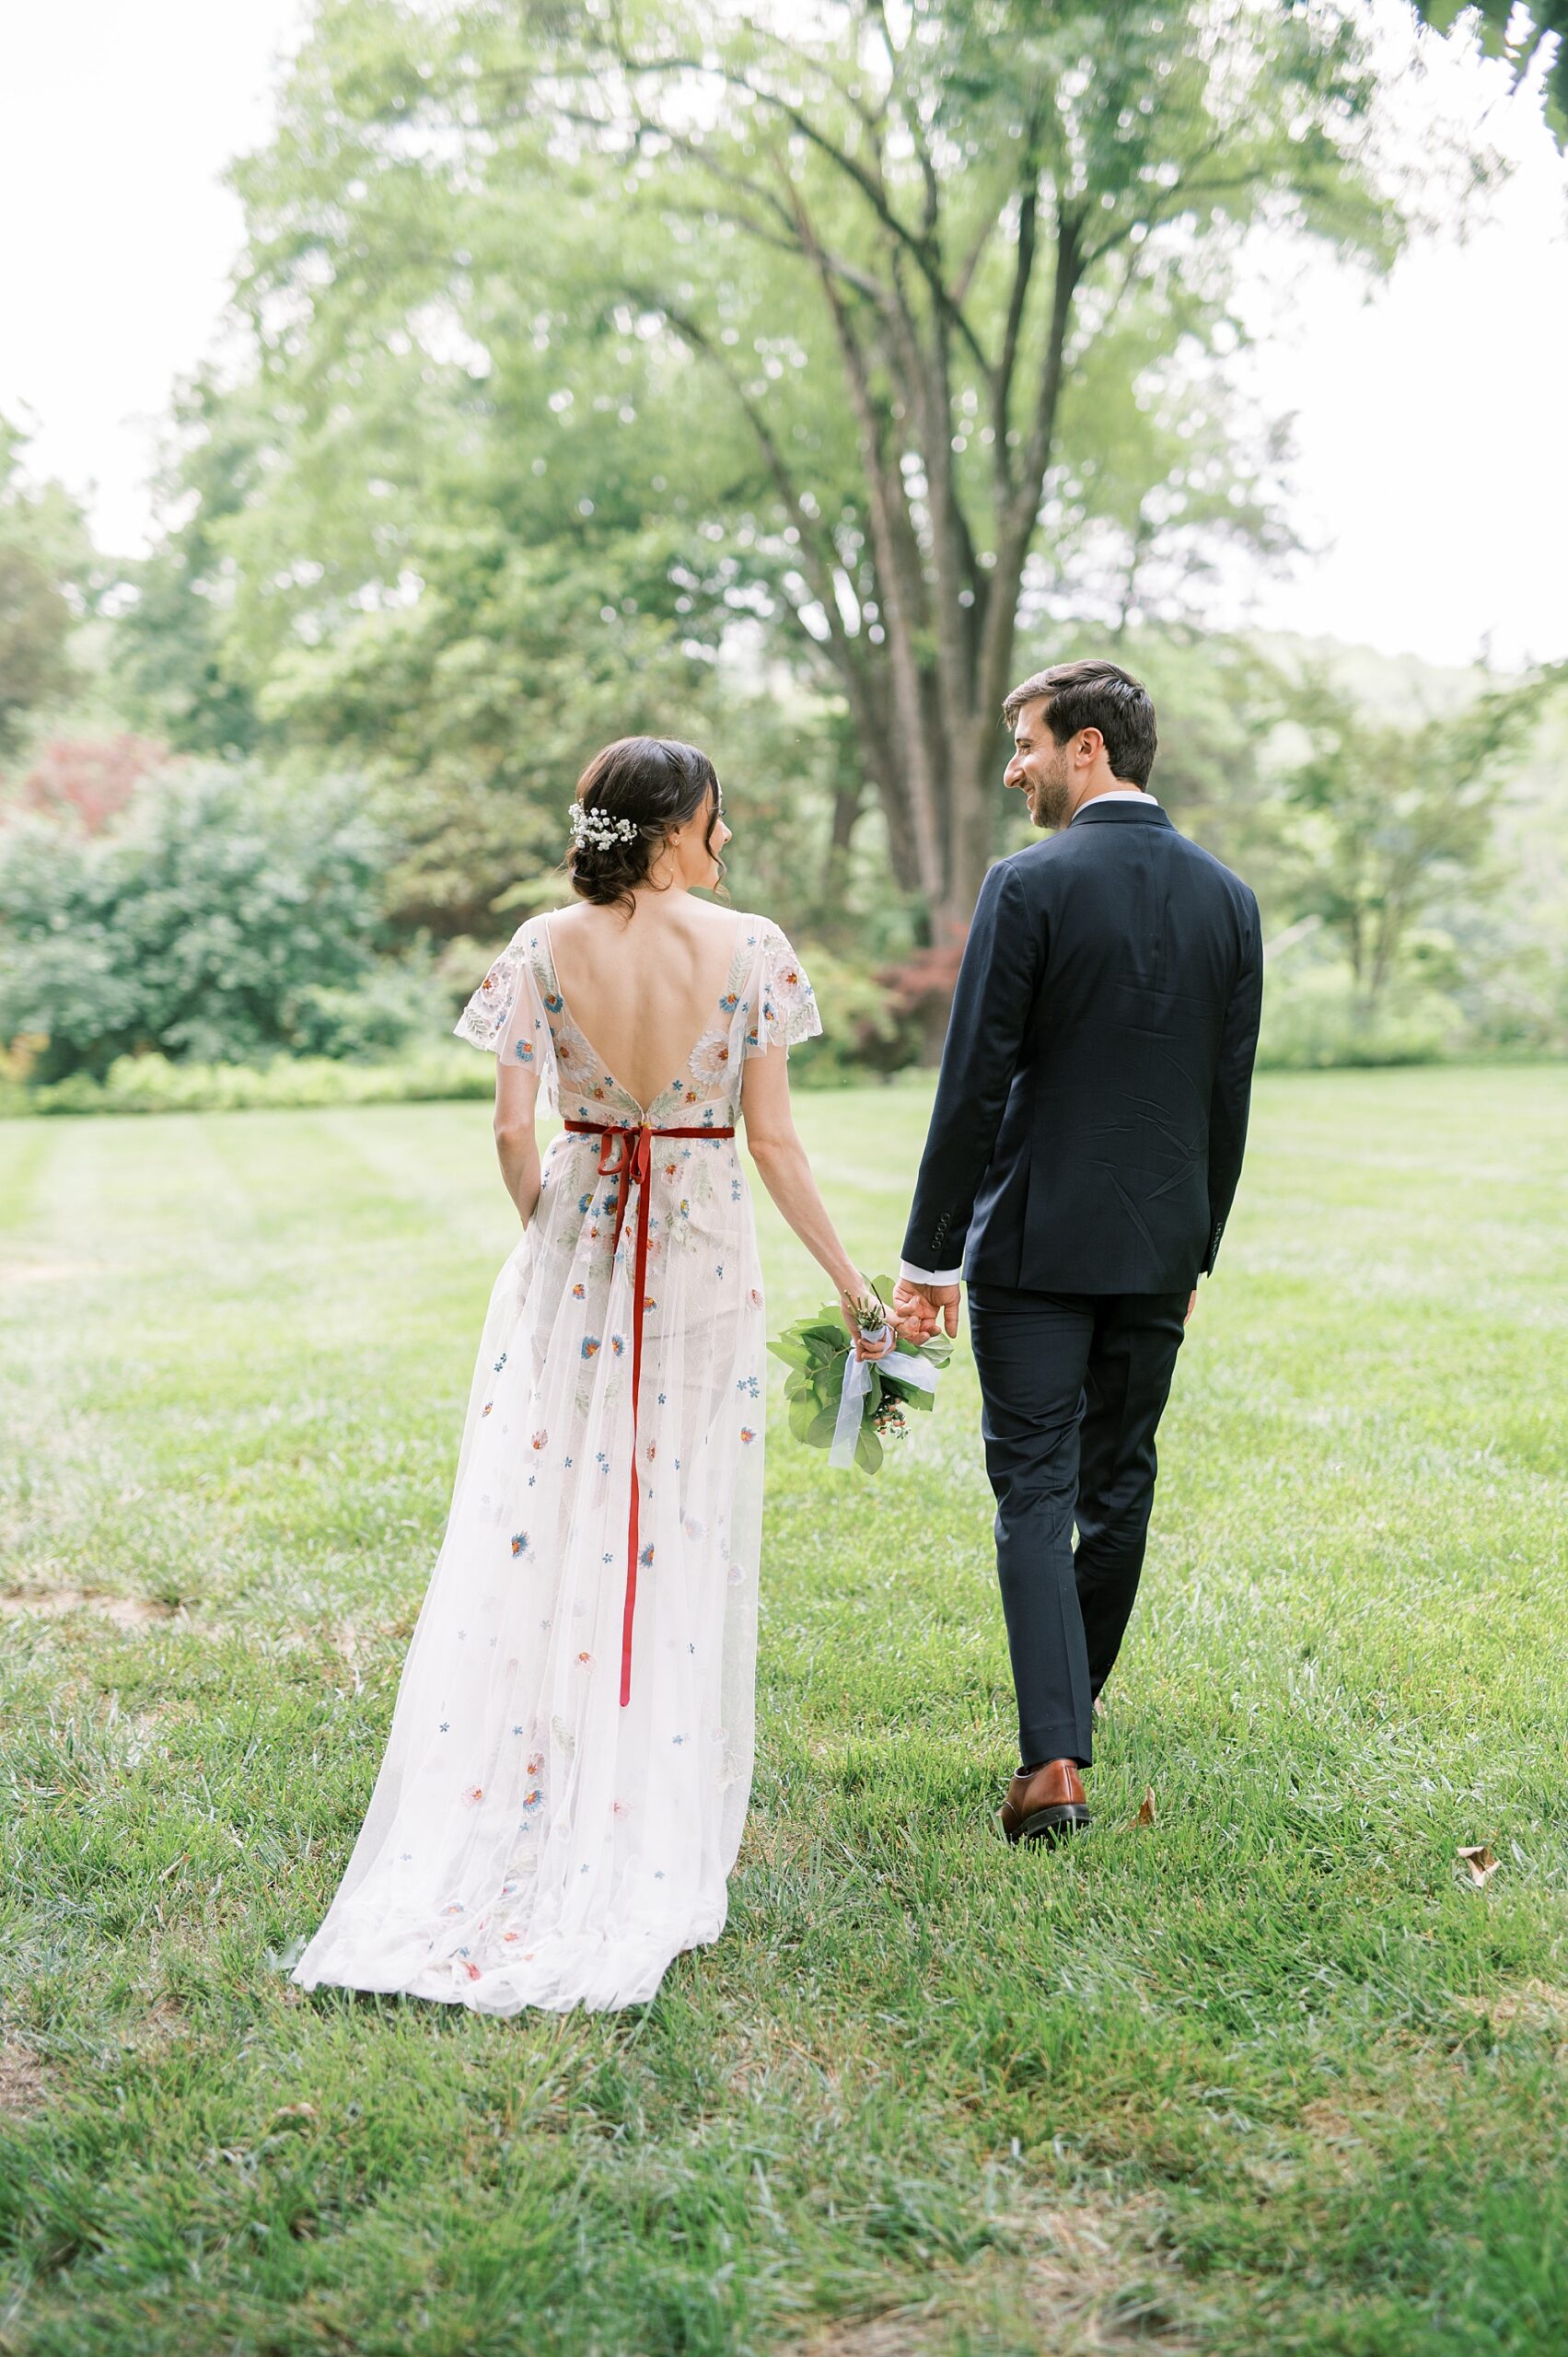 bride and groom walk together holding hands